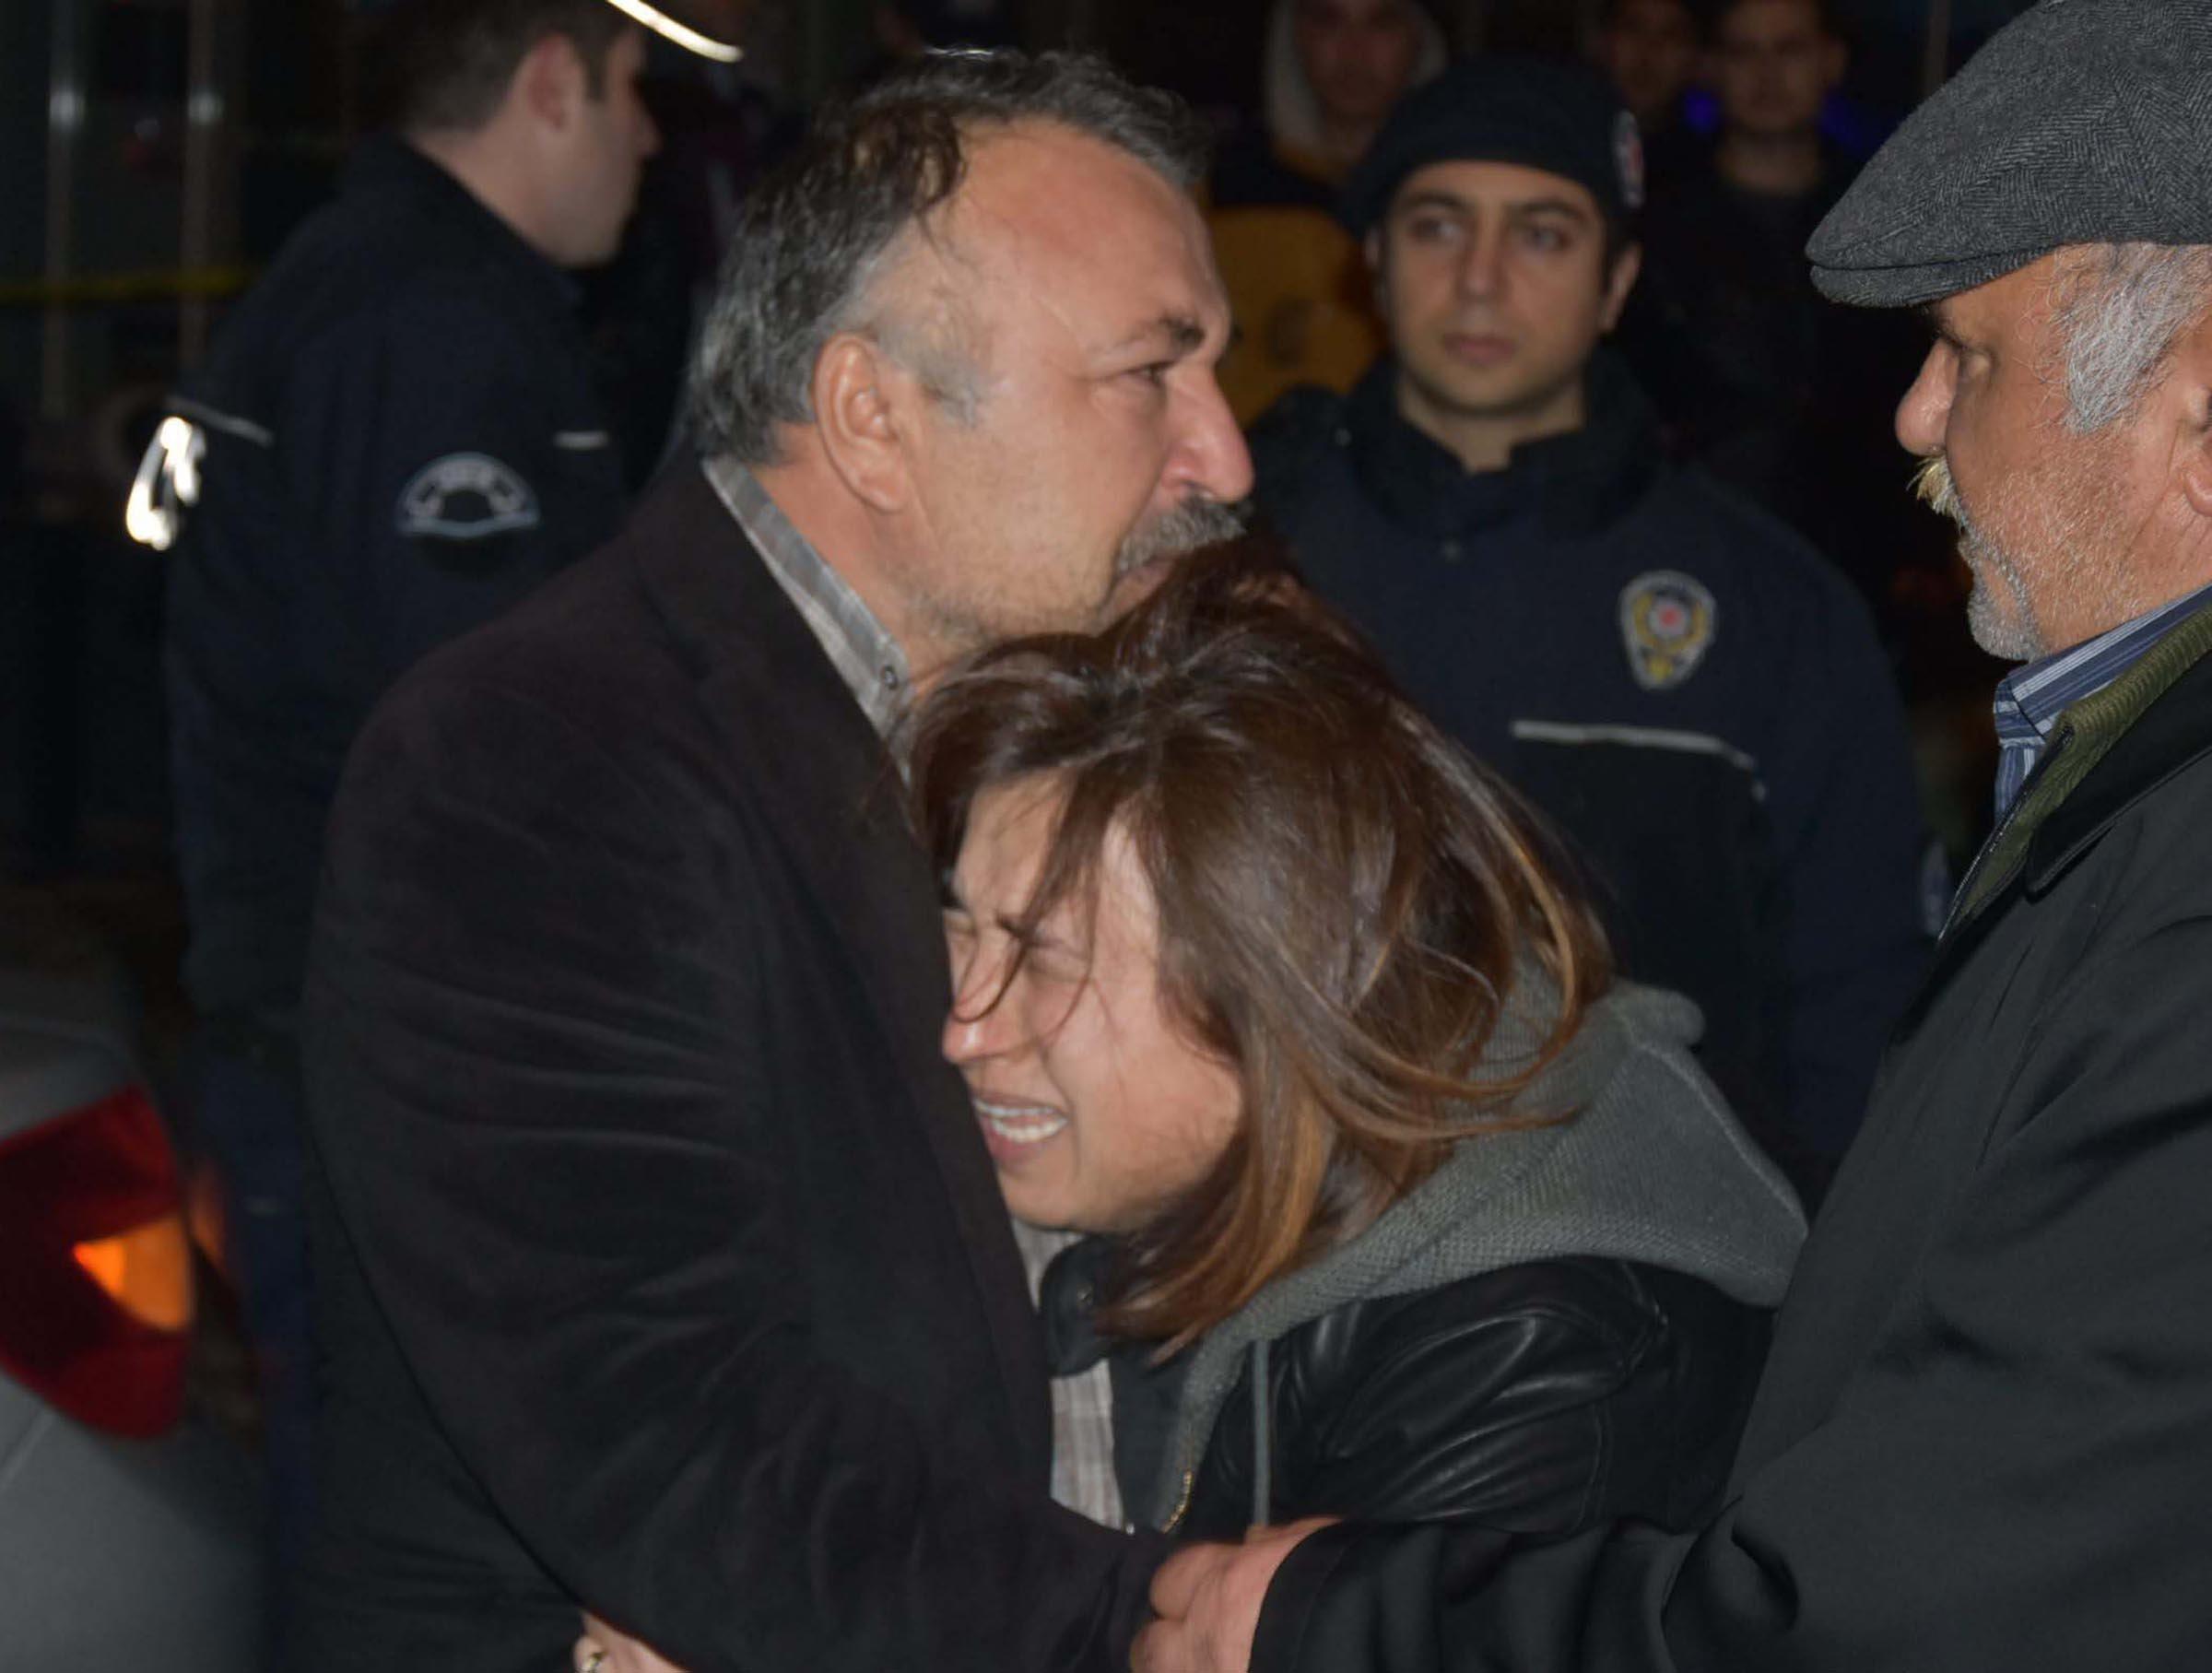 İzmirdeki saldırıda şehit olan mübaşir Musa Can’ın kız kardeşi haberi alınca sinir krizi geçirdi